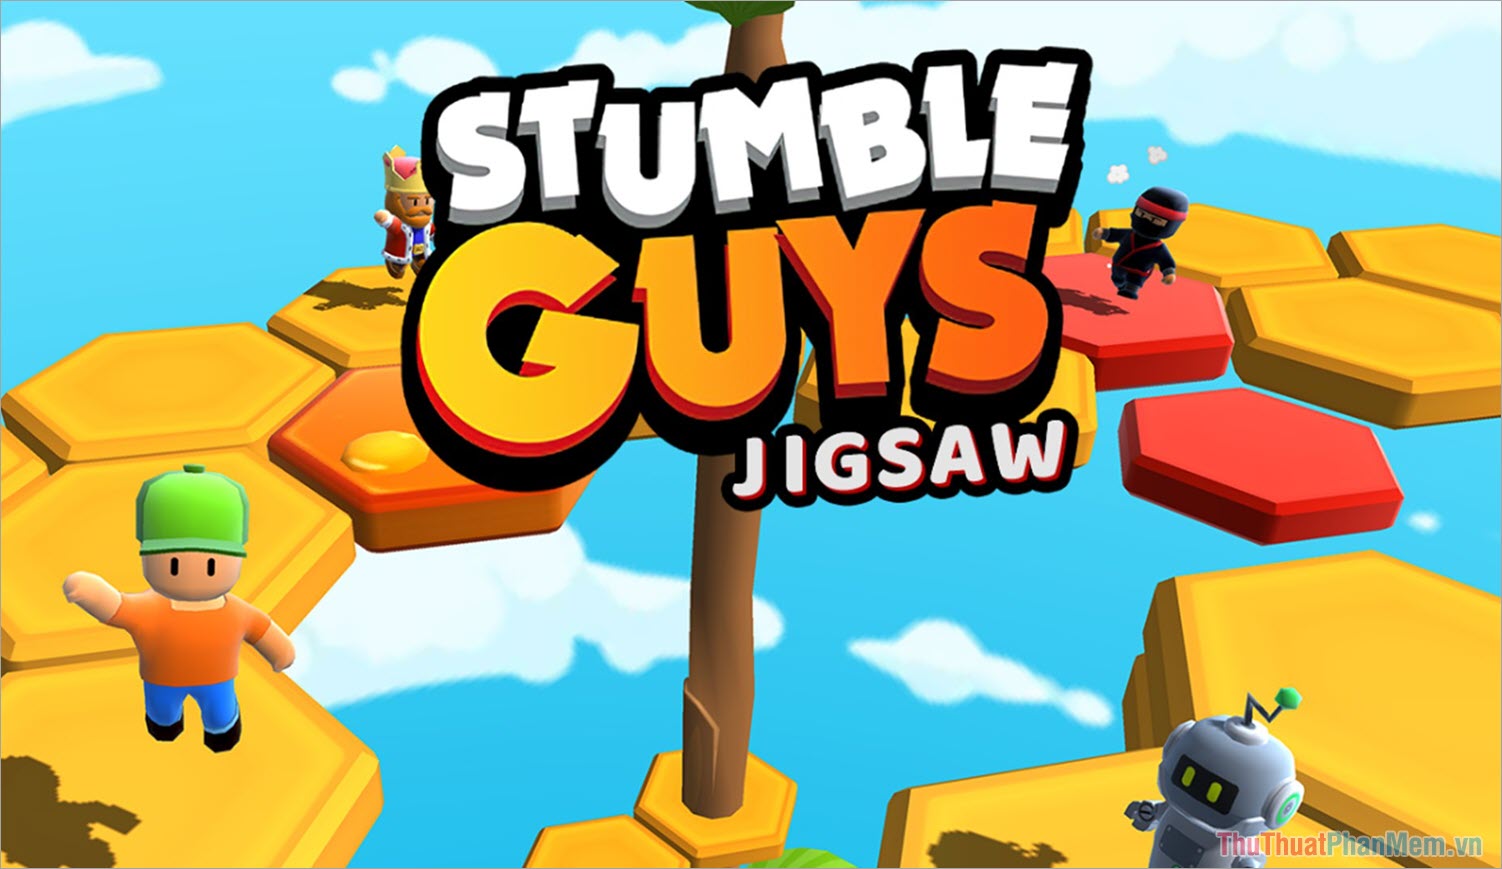 Stumble Guys – Game chơi trên tay cầm hay nhất cho nhóm bạn